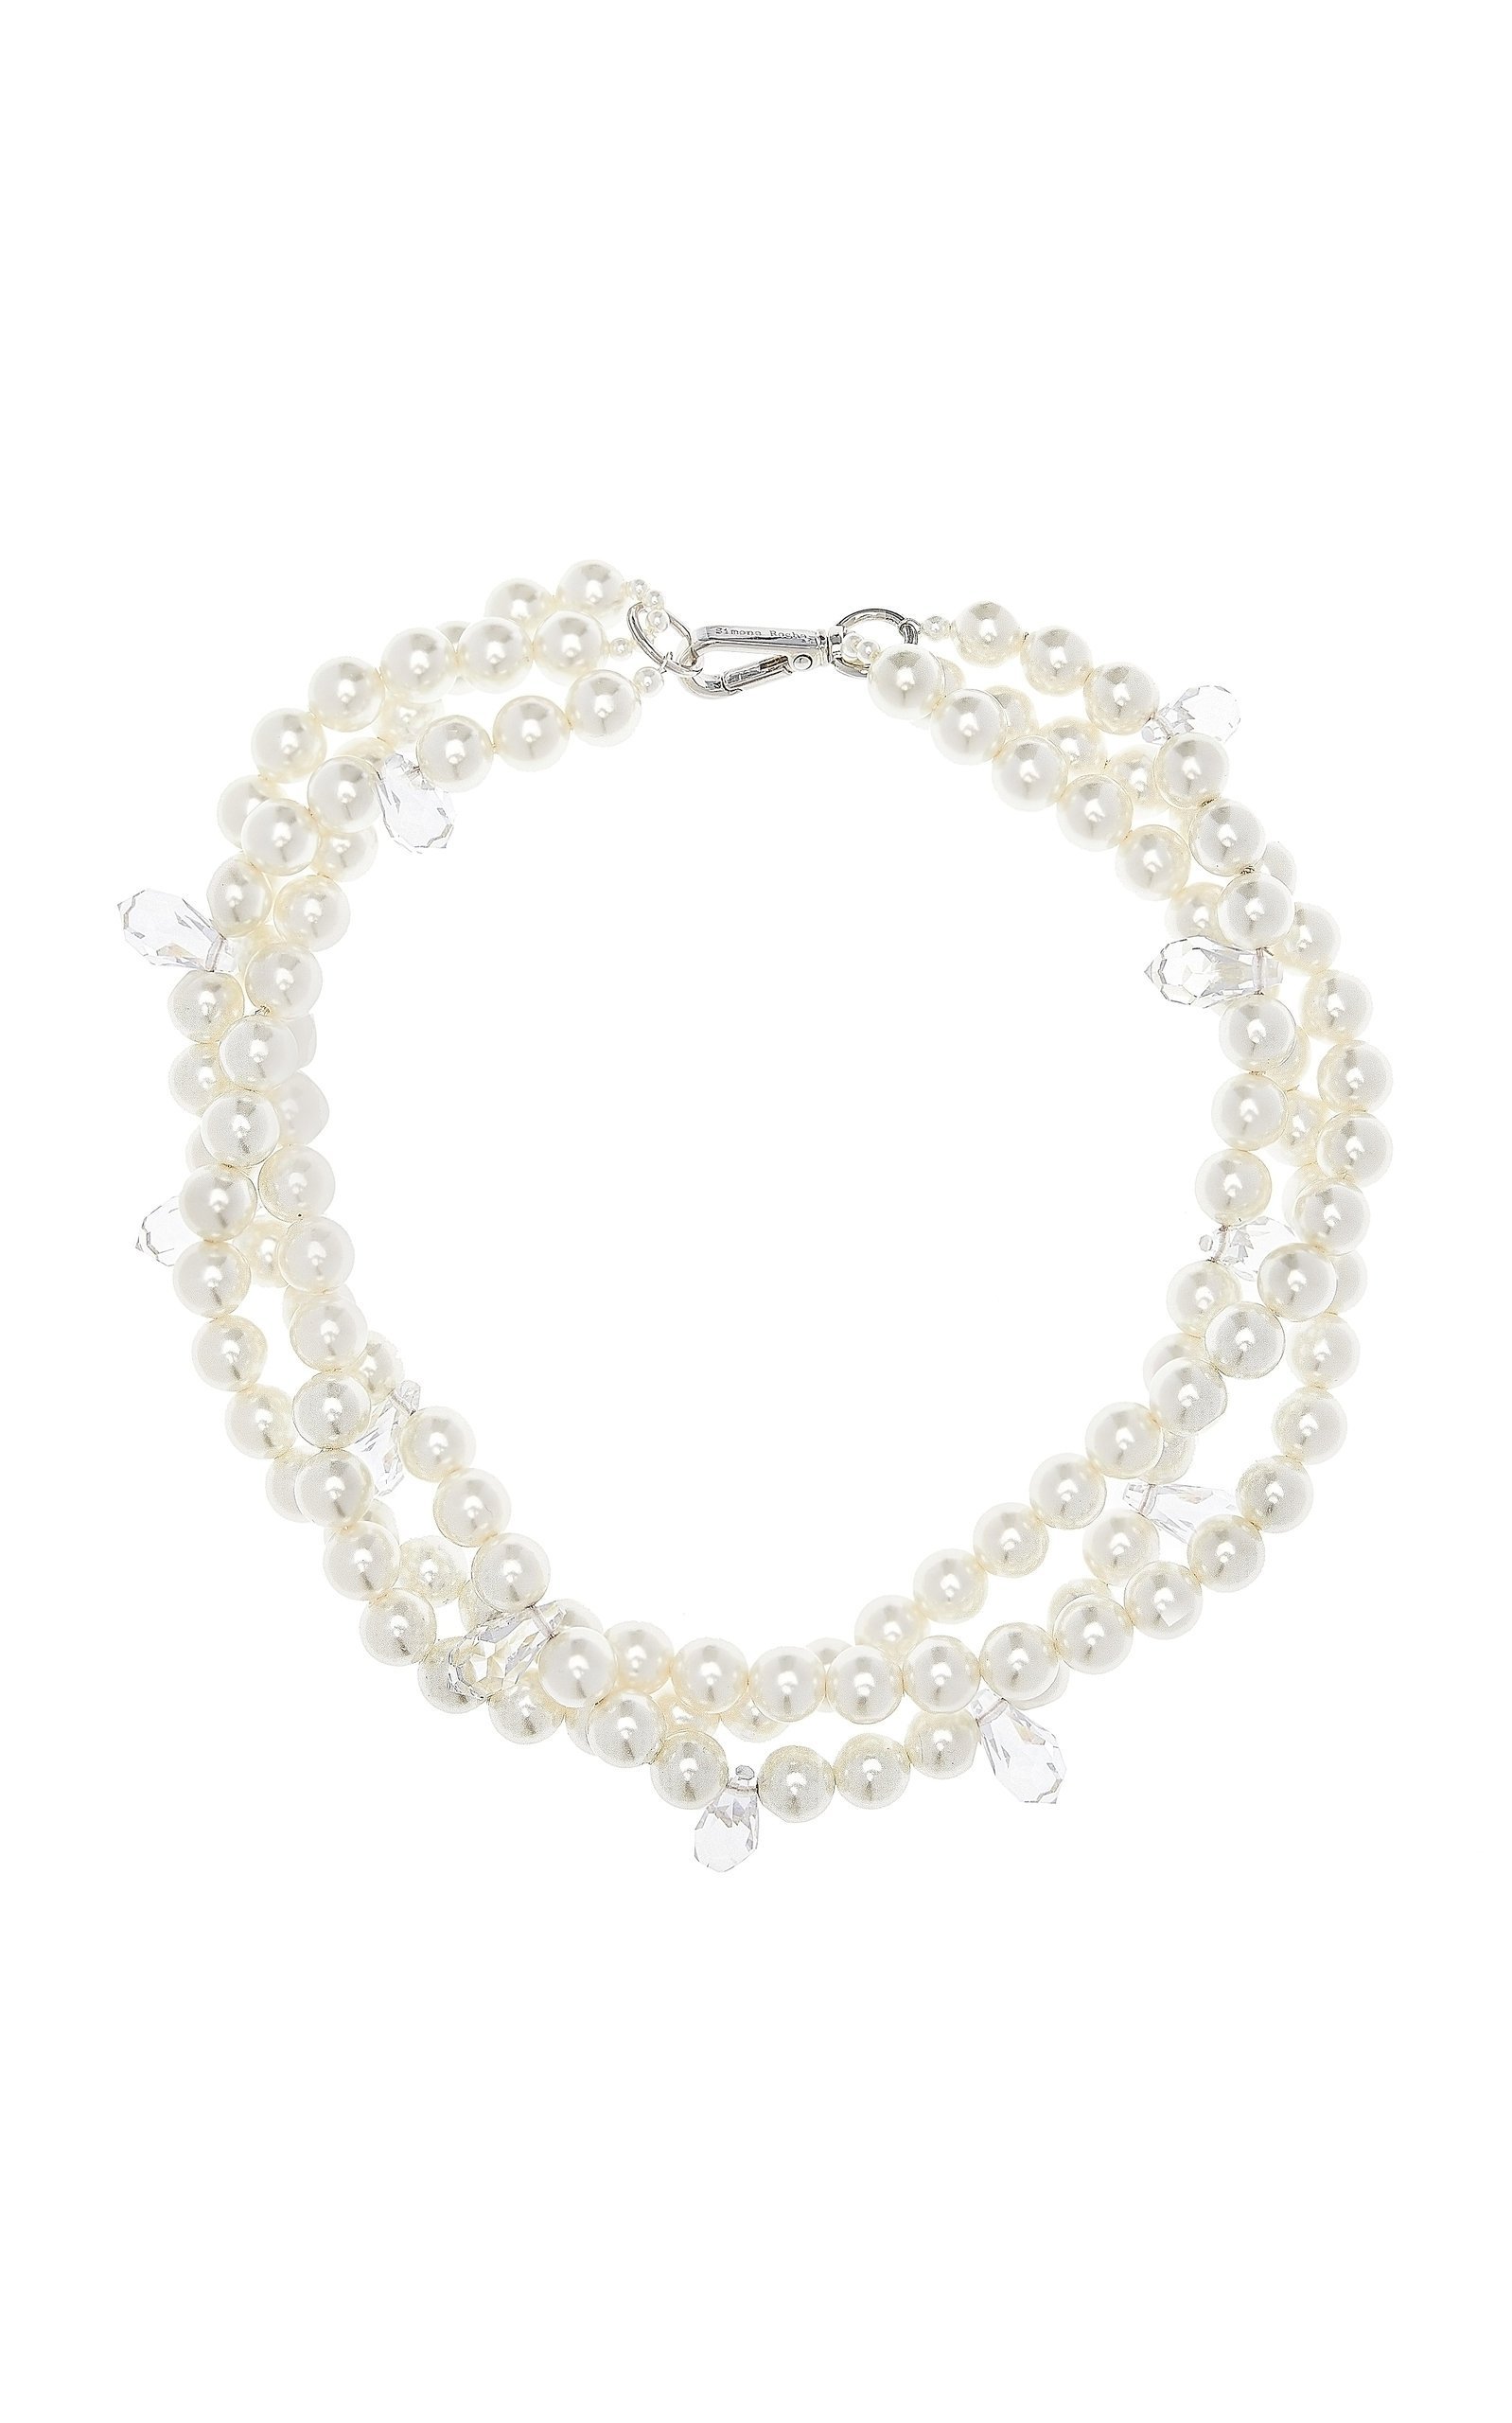 Simone Rocha "Twisted Pearl Glass Necklace," $375 at Moda Operandi